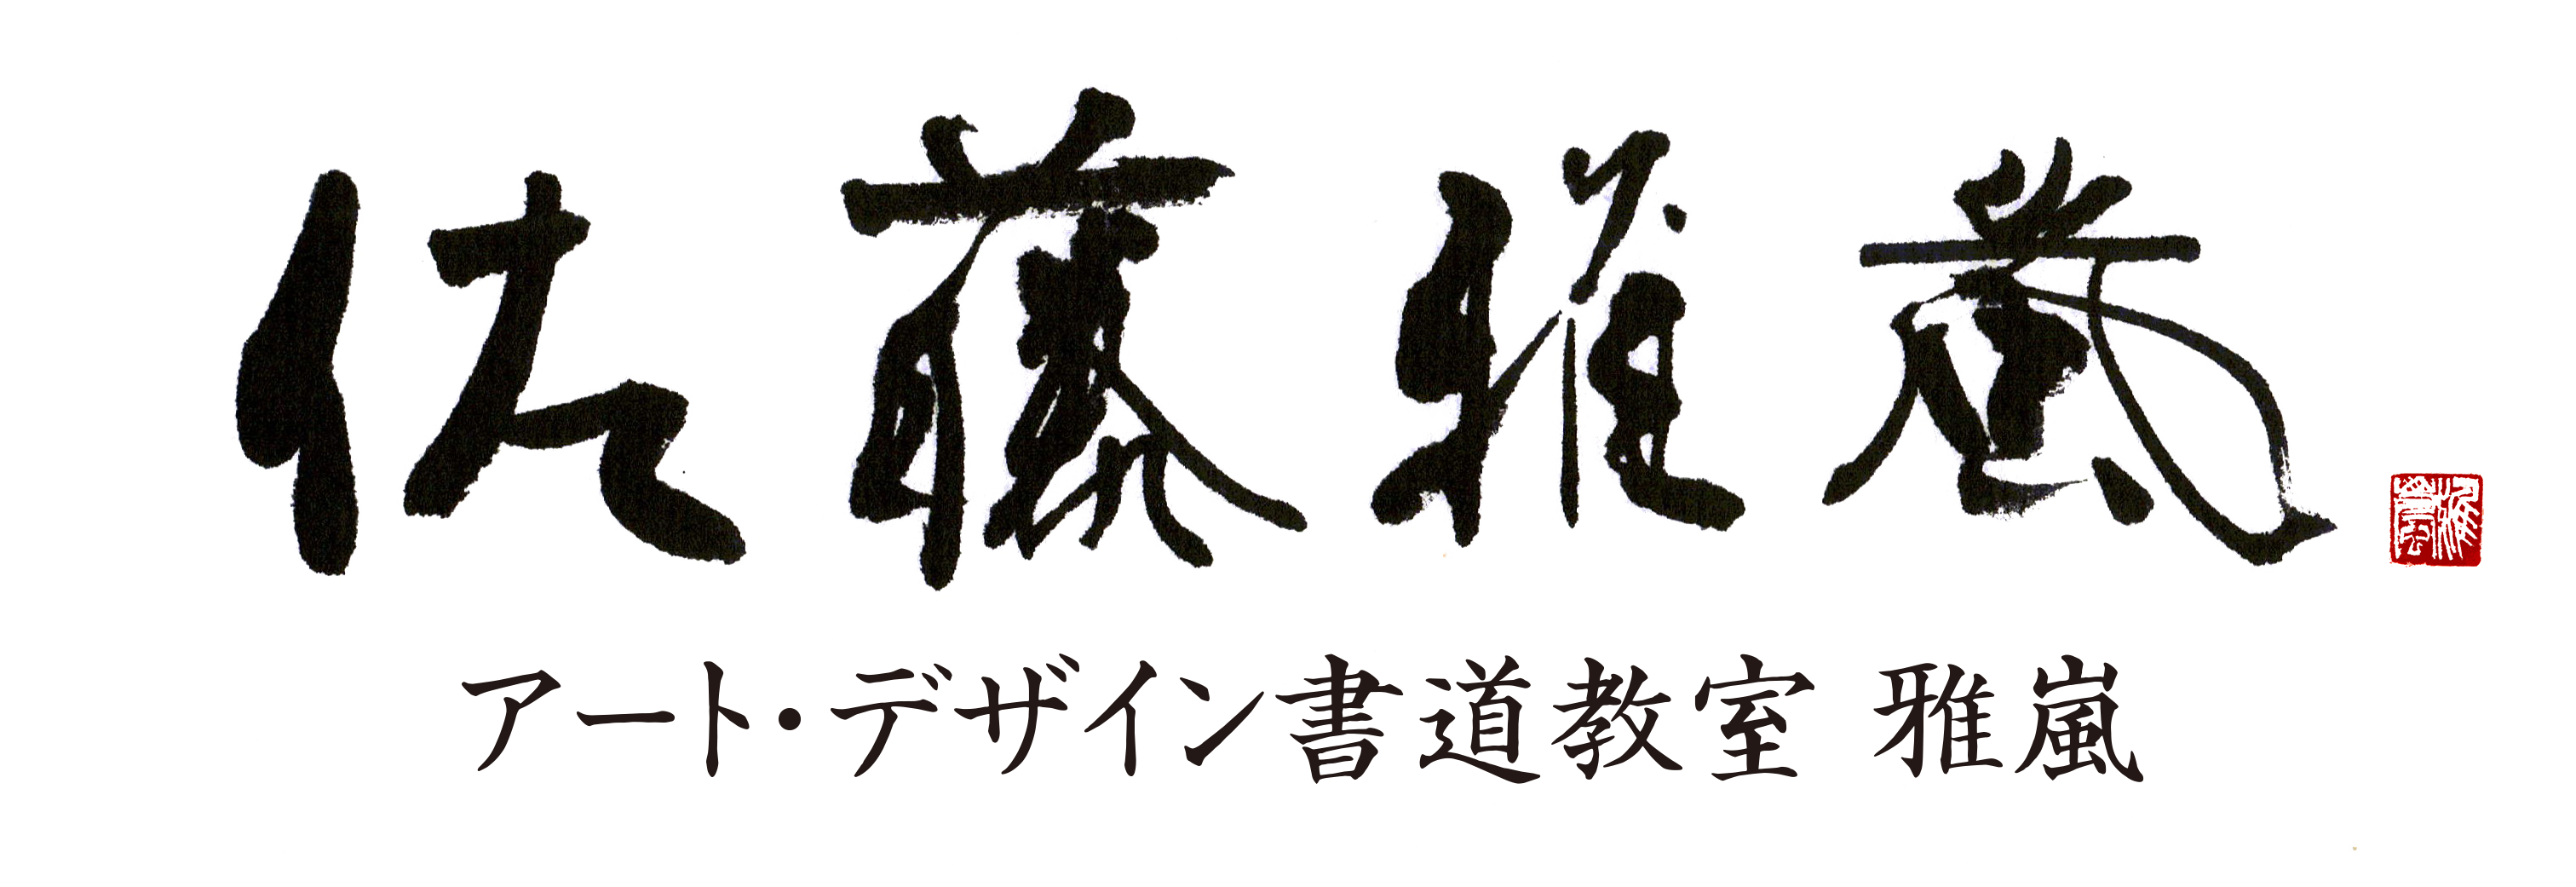 日本の伝統文化書道を 年賀状とお正月準備に取り入れる 書家 佐藤雅嵐 公式サイト 東京銀座アート書道教室